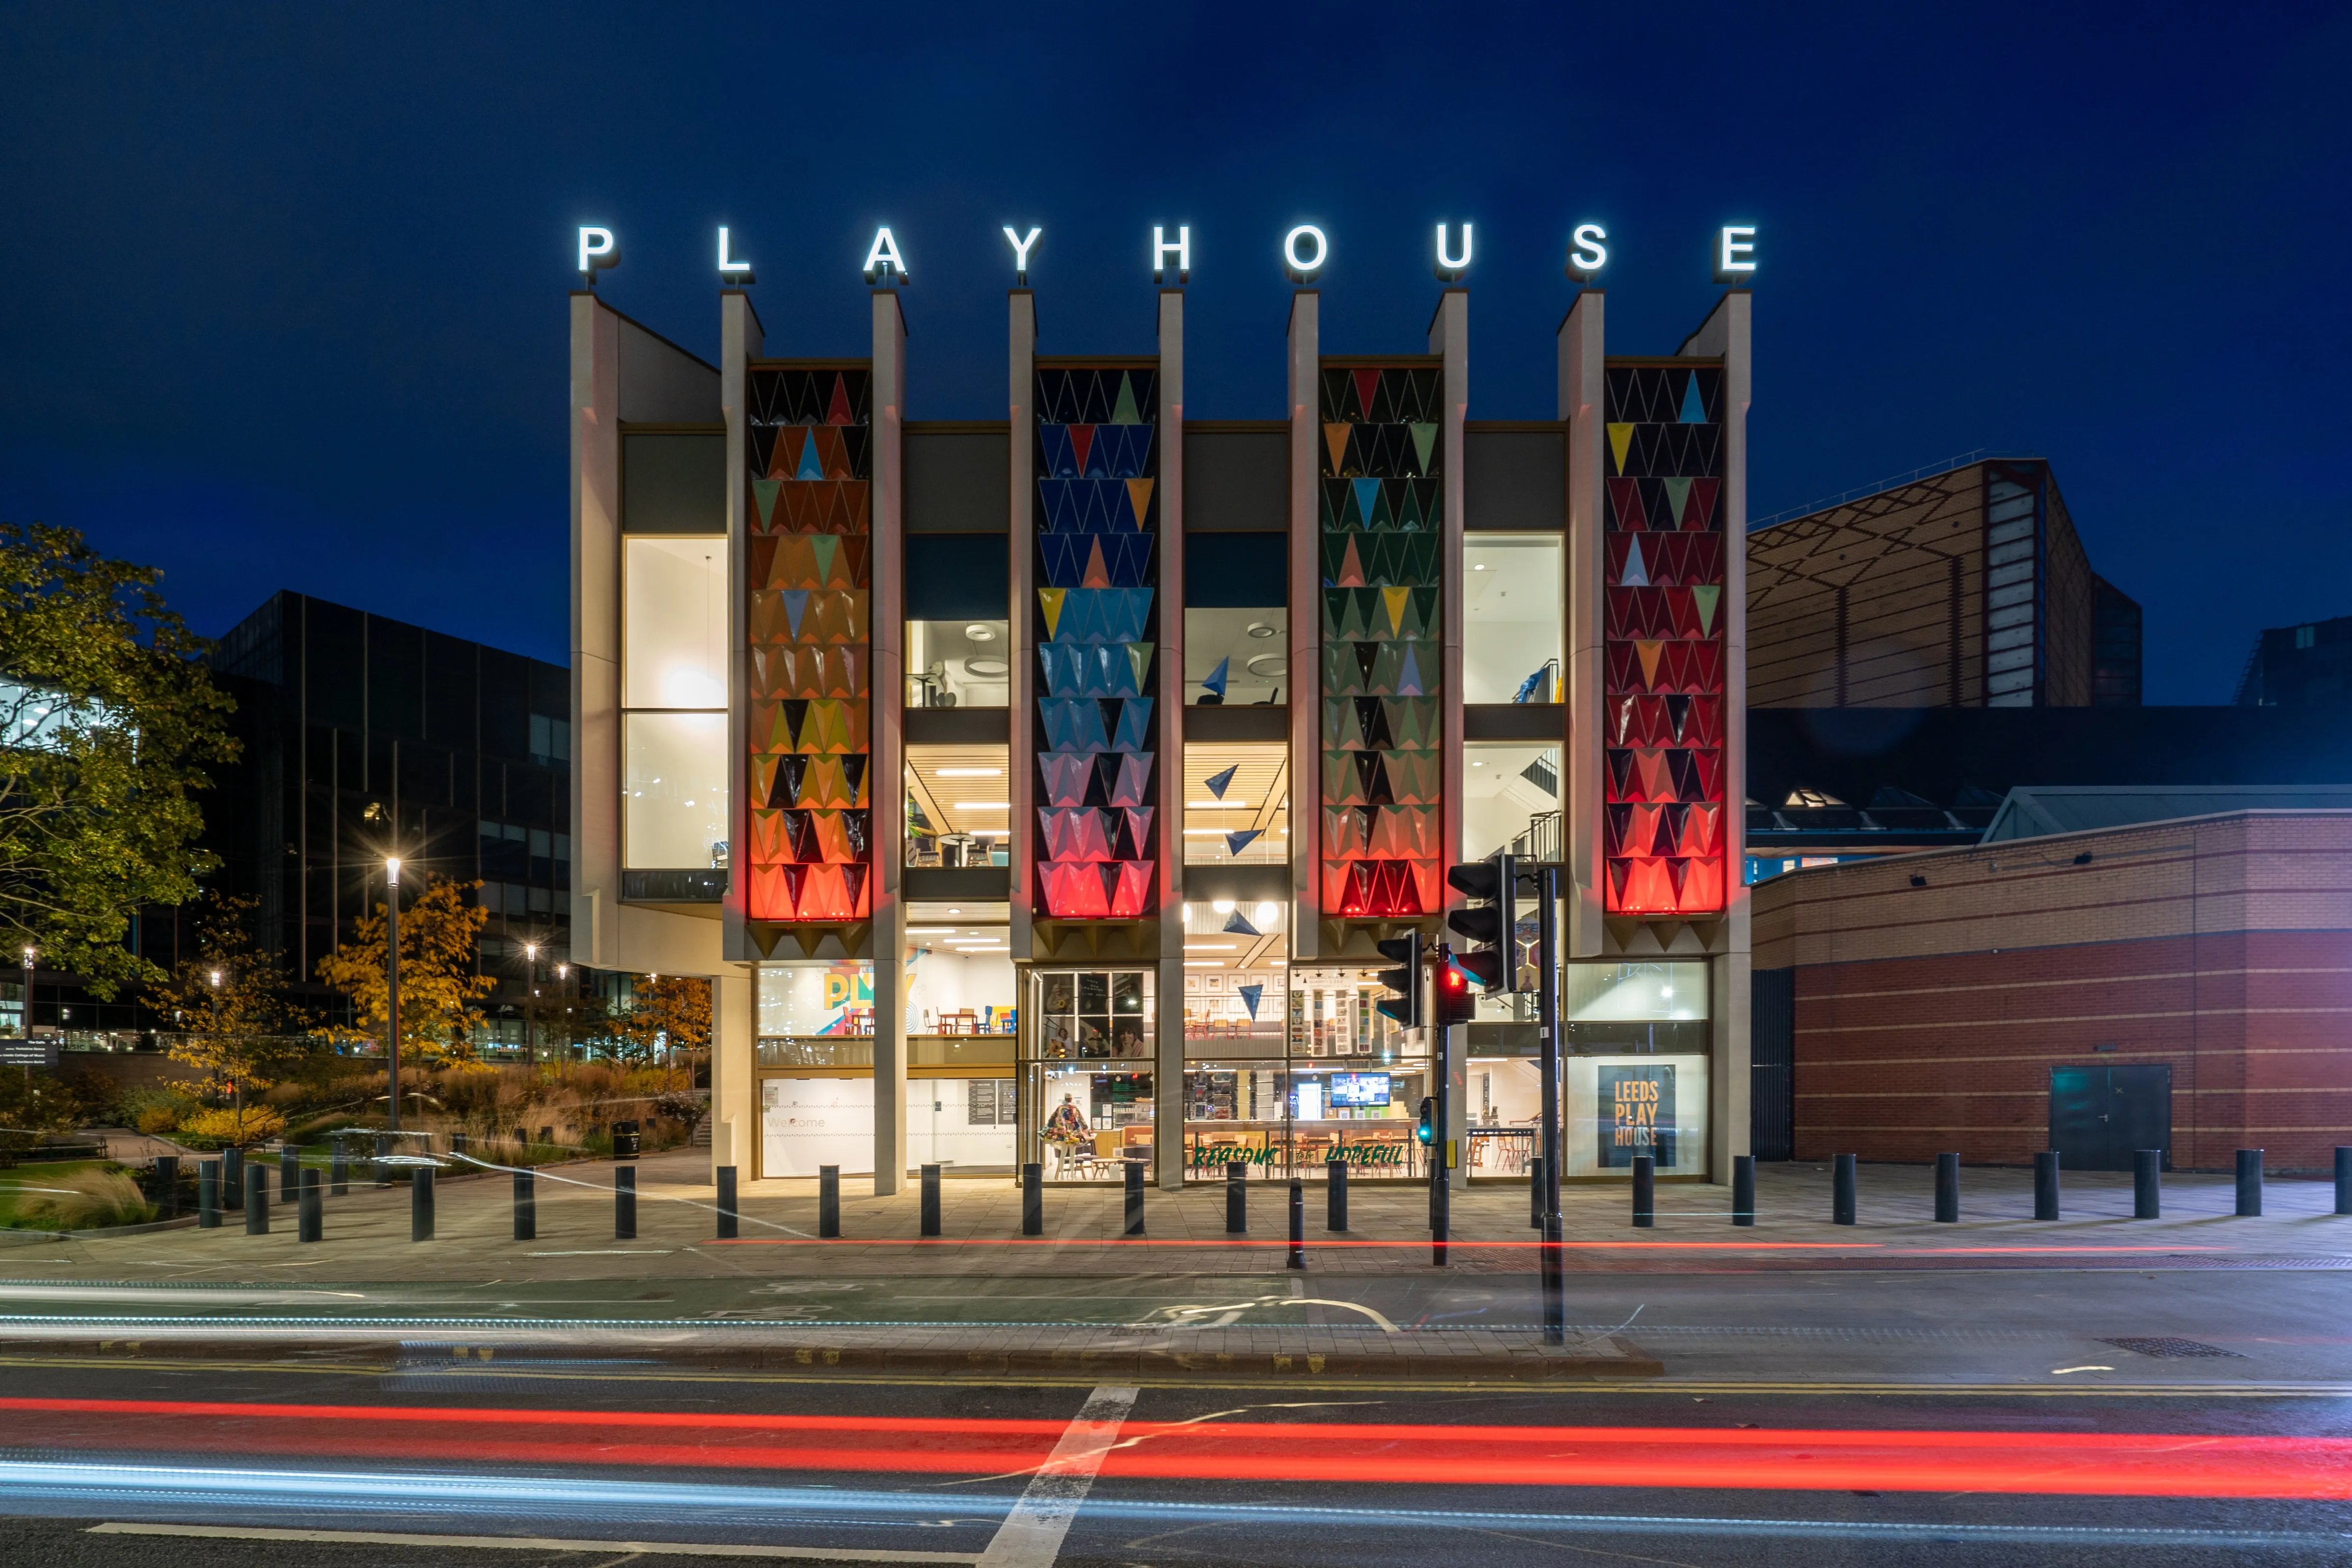 Leeds Playhouse at night.